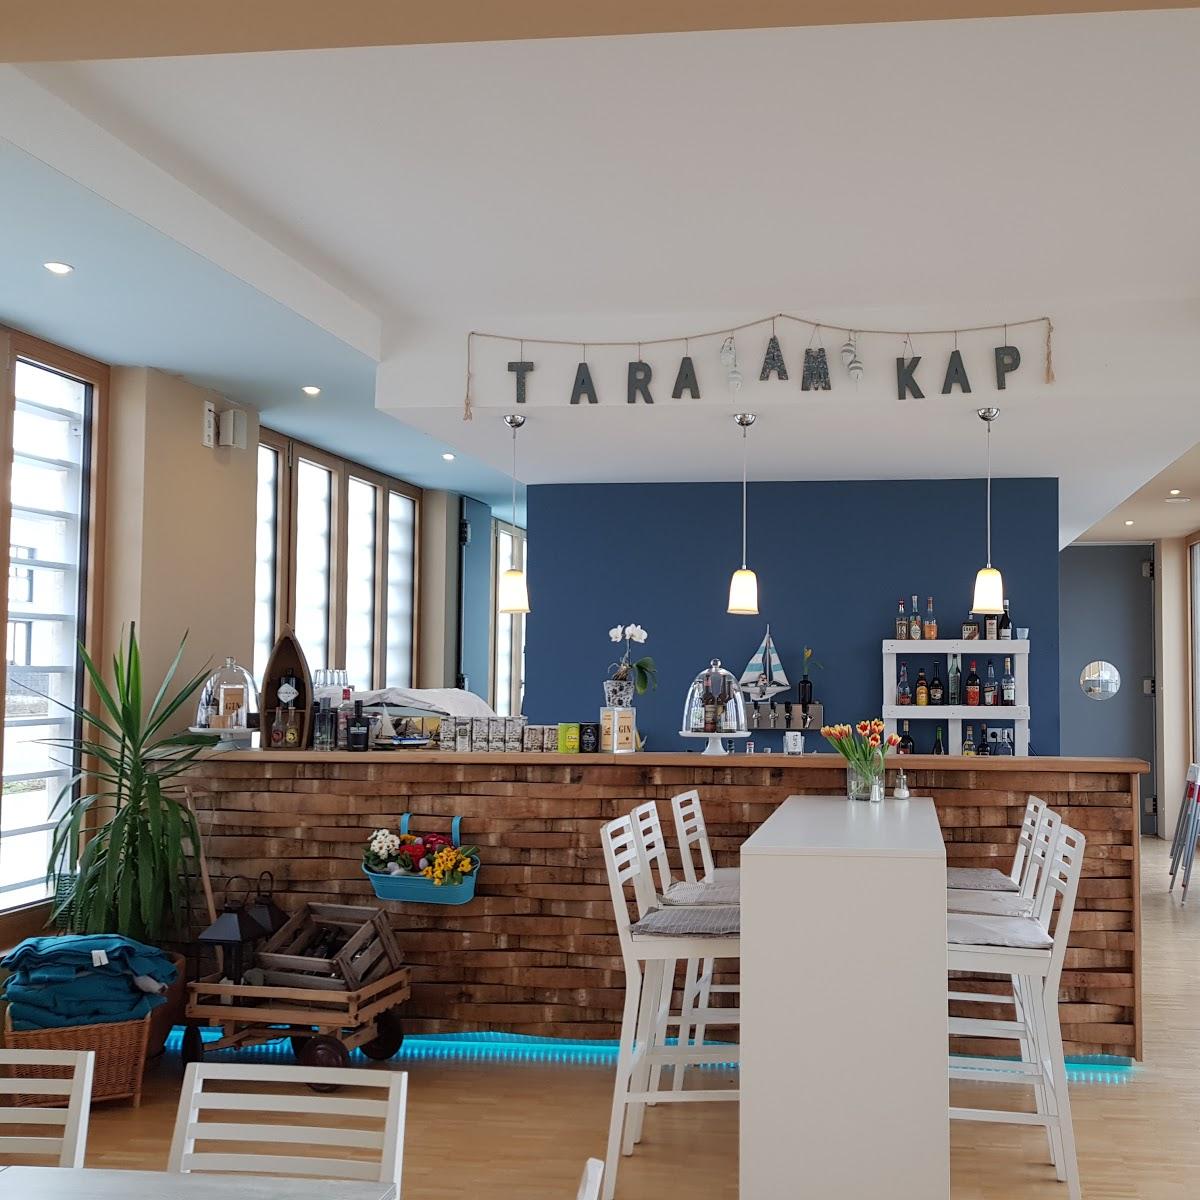 Restaurant "Tara am Kap" in Zwenkau